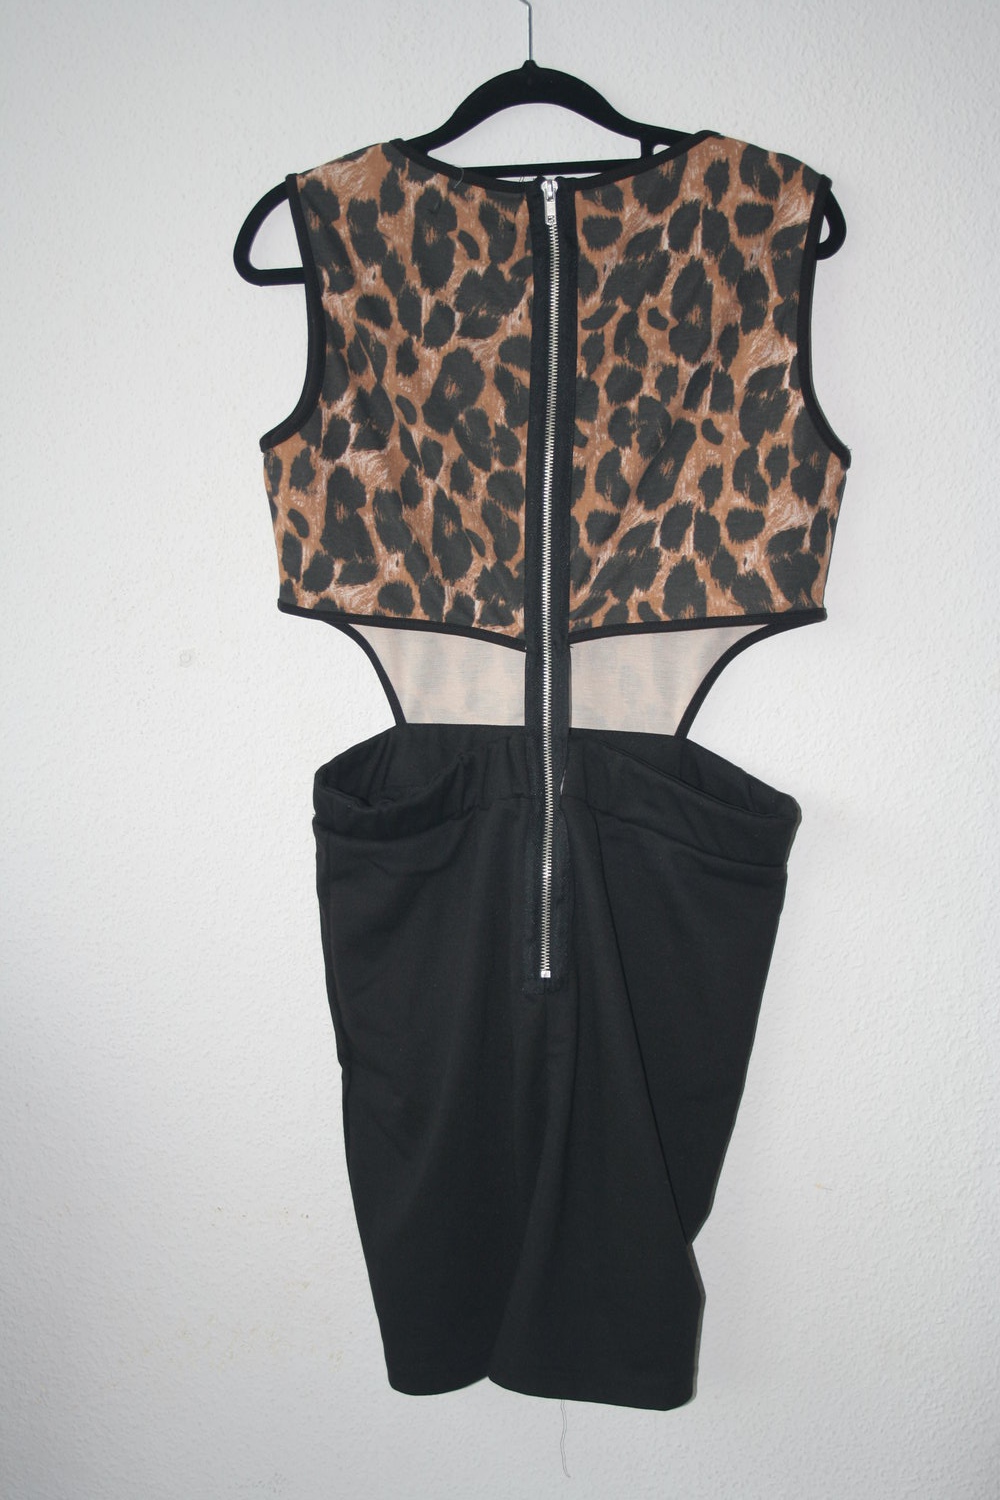 Neues Kleid mit Cutouts Leo Leopard Minikleid L 38/40